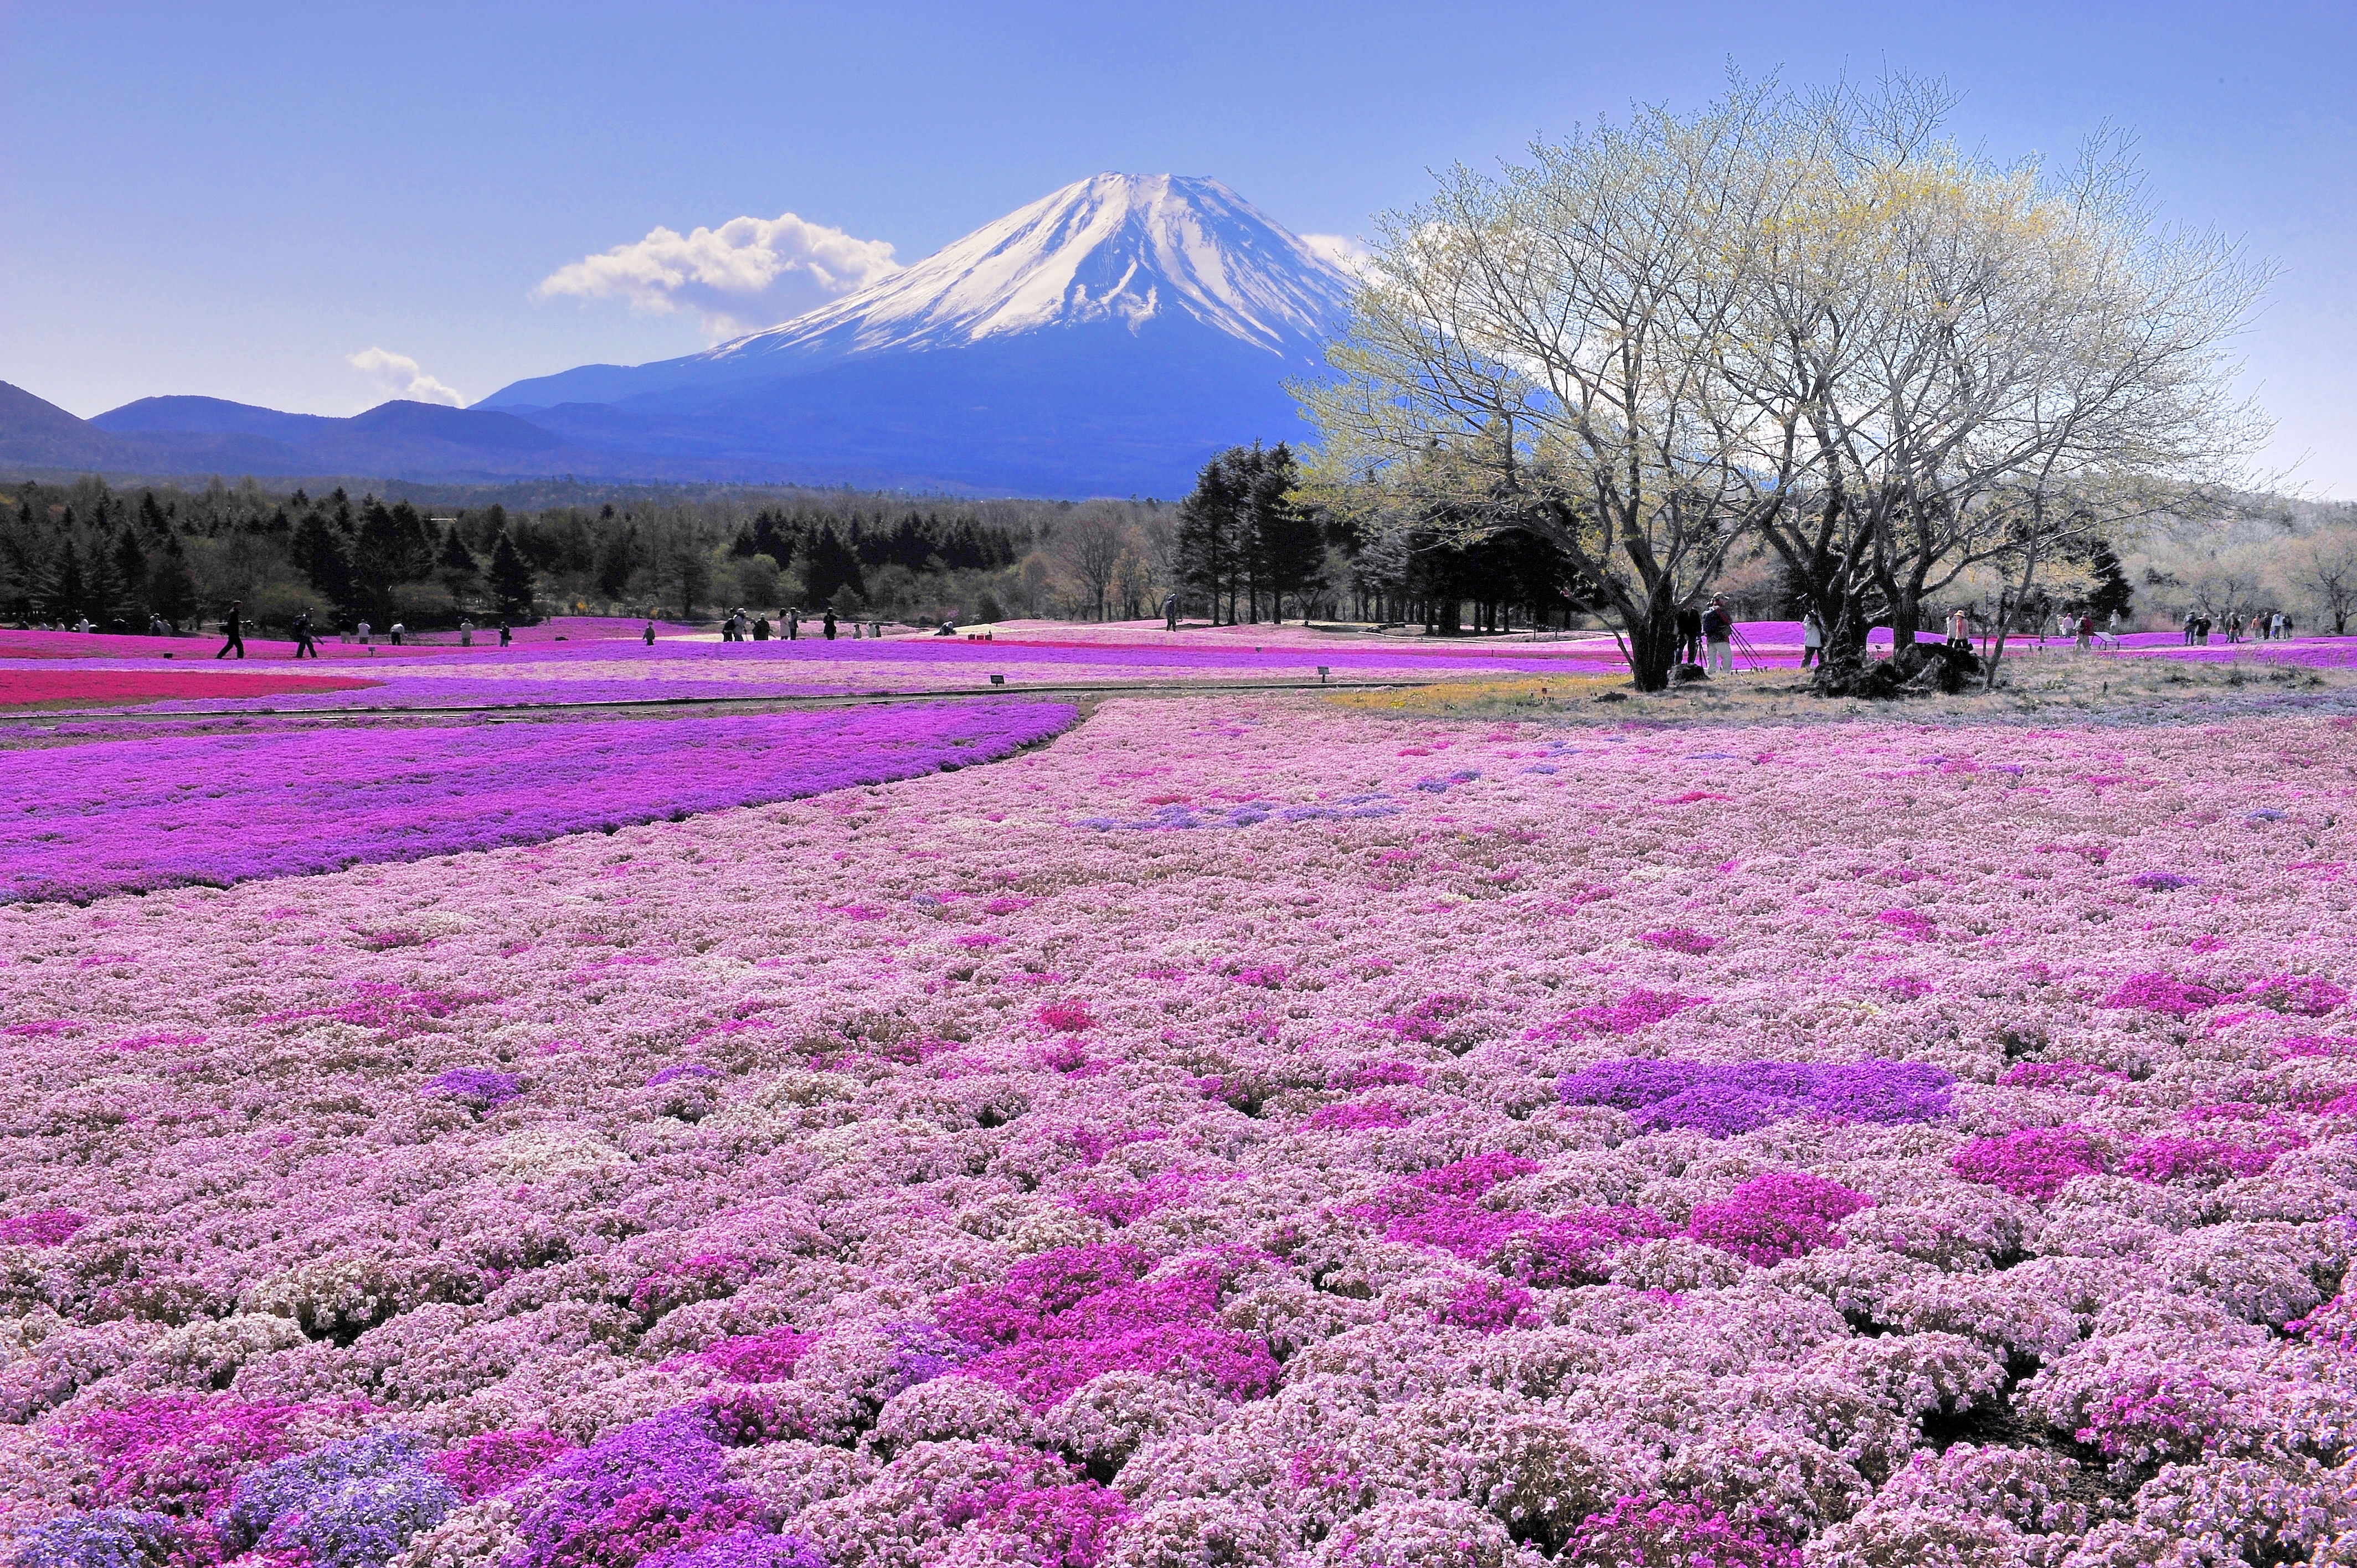 Mount Fuji: Nếu bạn là một tín đồ của du lịch và yêu thích những cảnh đẹp trên đời, thì hãy không bỏ qua bức ảnh về dãy núi phủ tuyết Mount Fuji ở Nhật Bản. Bức ảnh này sẽ khiến bạn phải trầm trồ ngắm nhìn vẻ đẹp hùng vĩ của núi Phú Sĩ cùng với tuyết trắng phủ đầy trên đỉnh. Hãy cùng khám phá vùng đất tuyệt đẹp này với ảnh Mount Fuji.